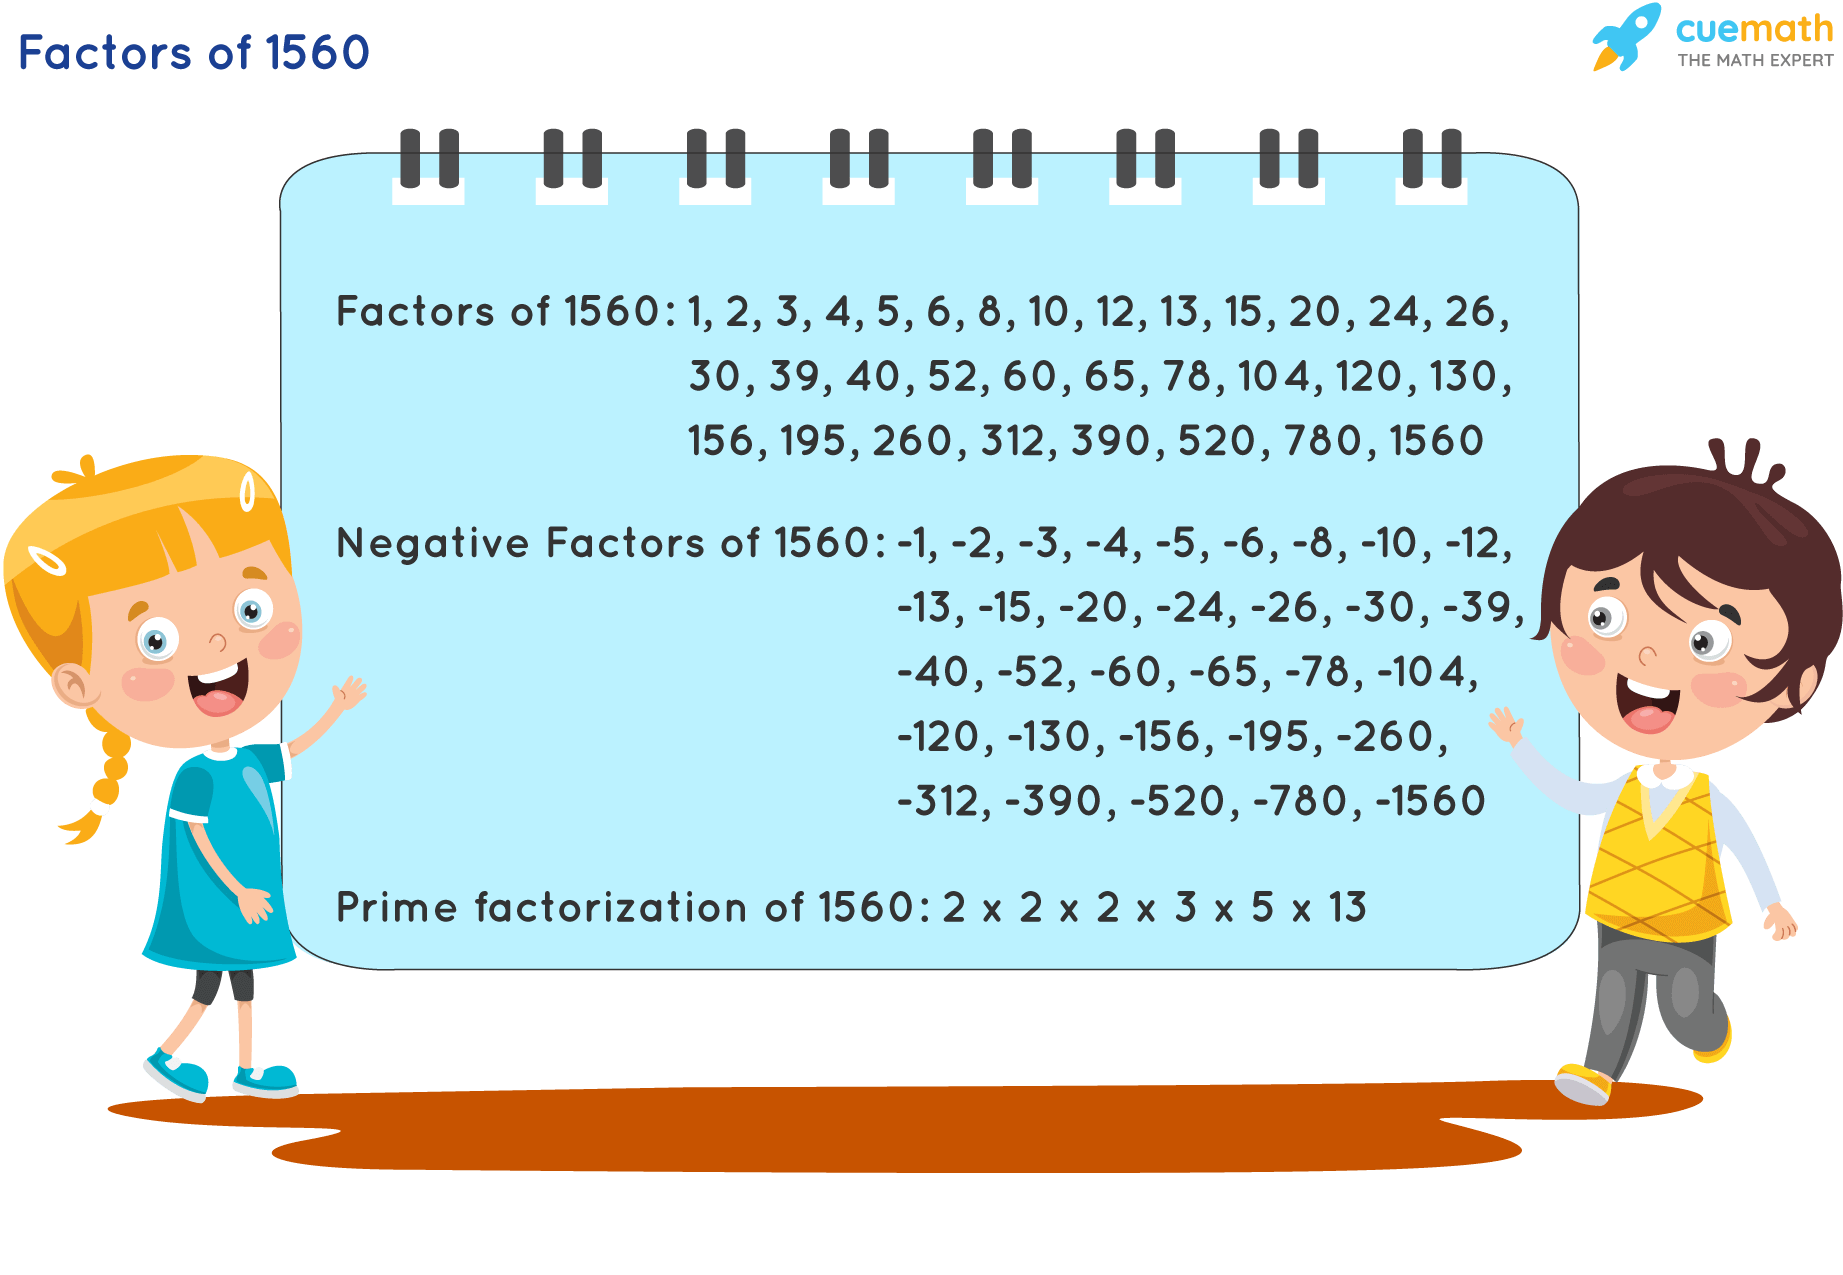 Factors of 1560